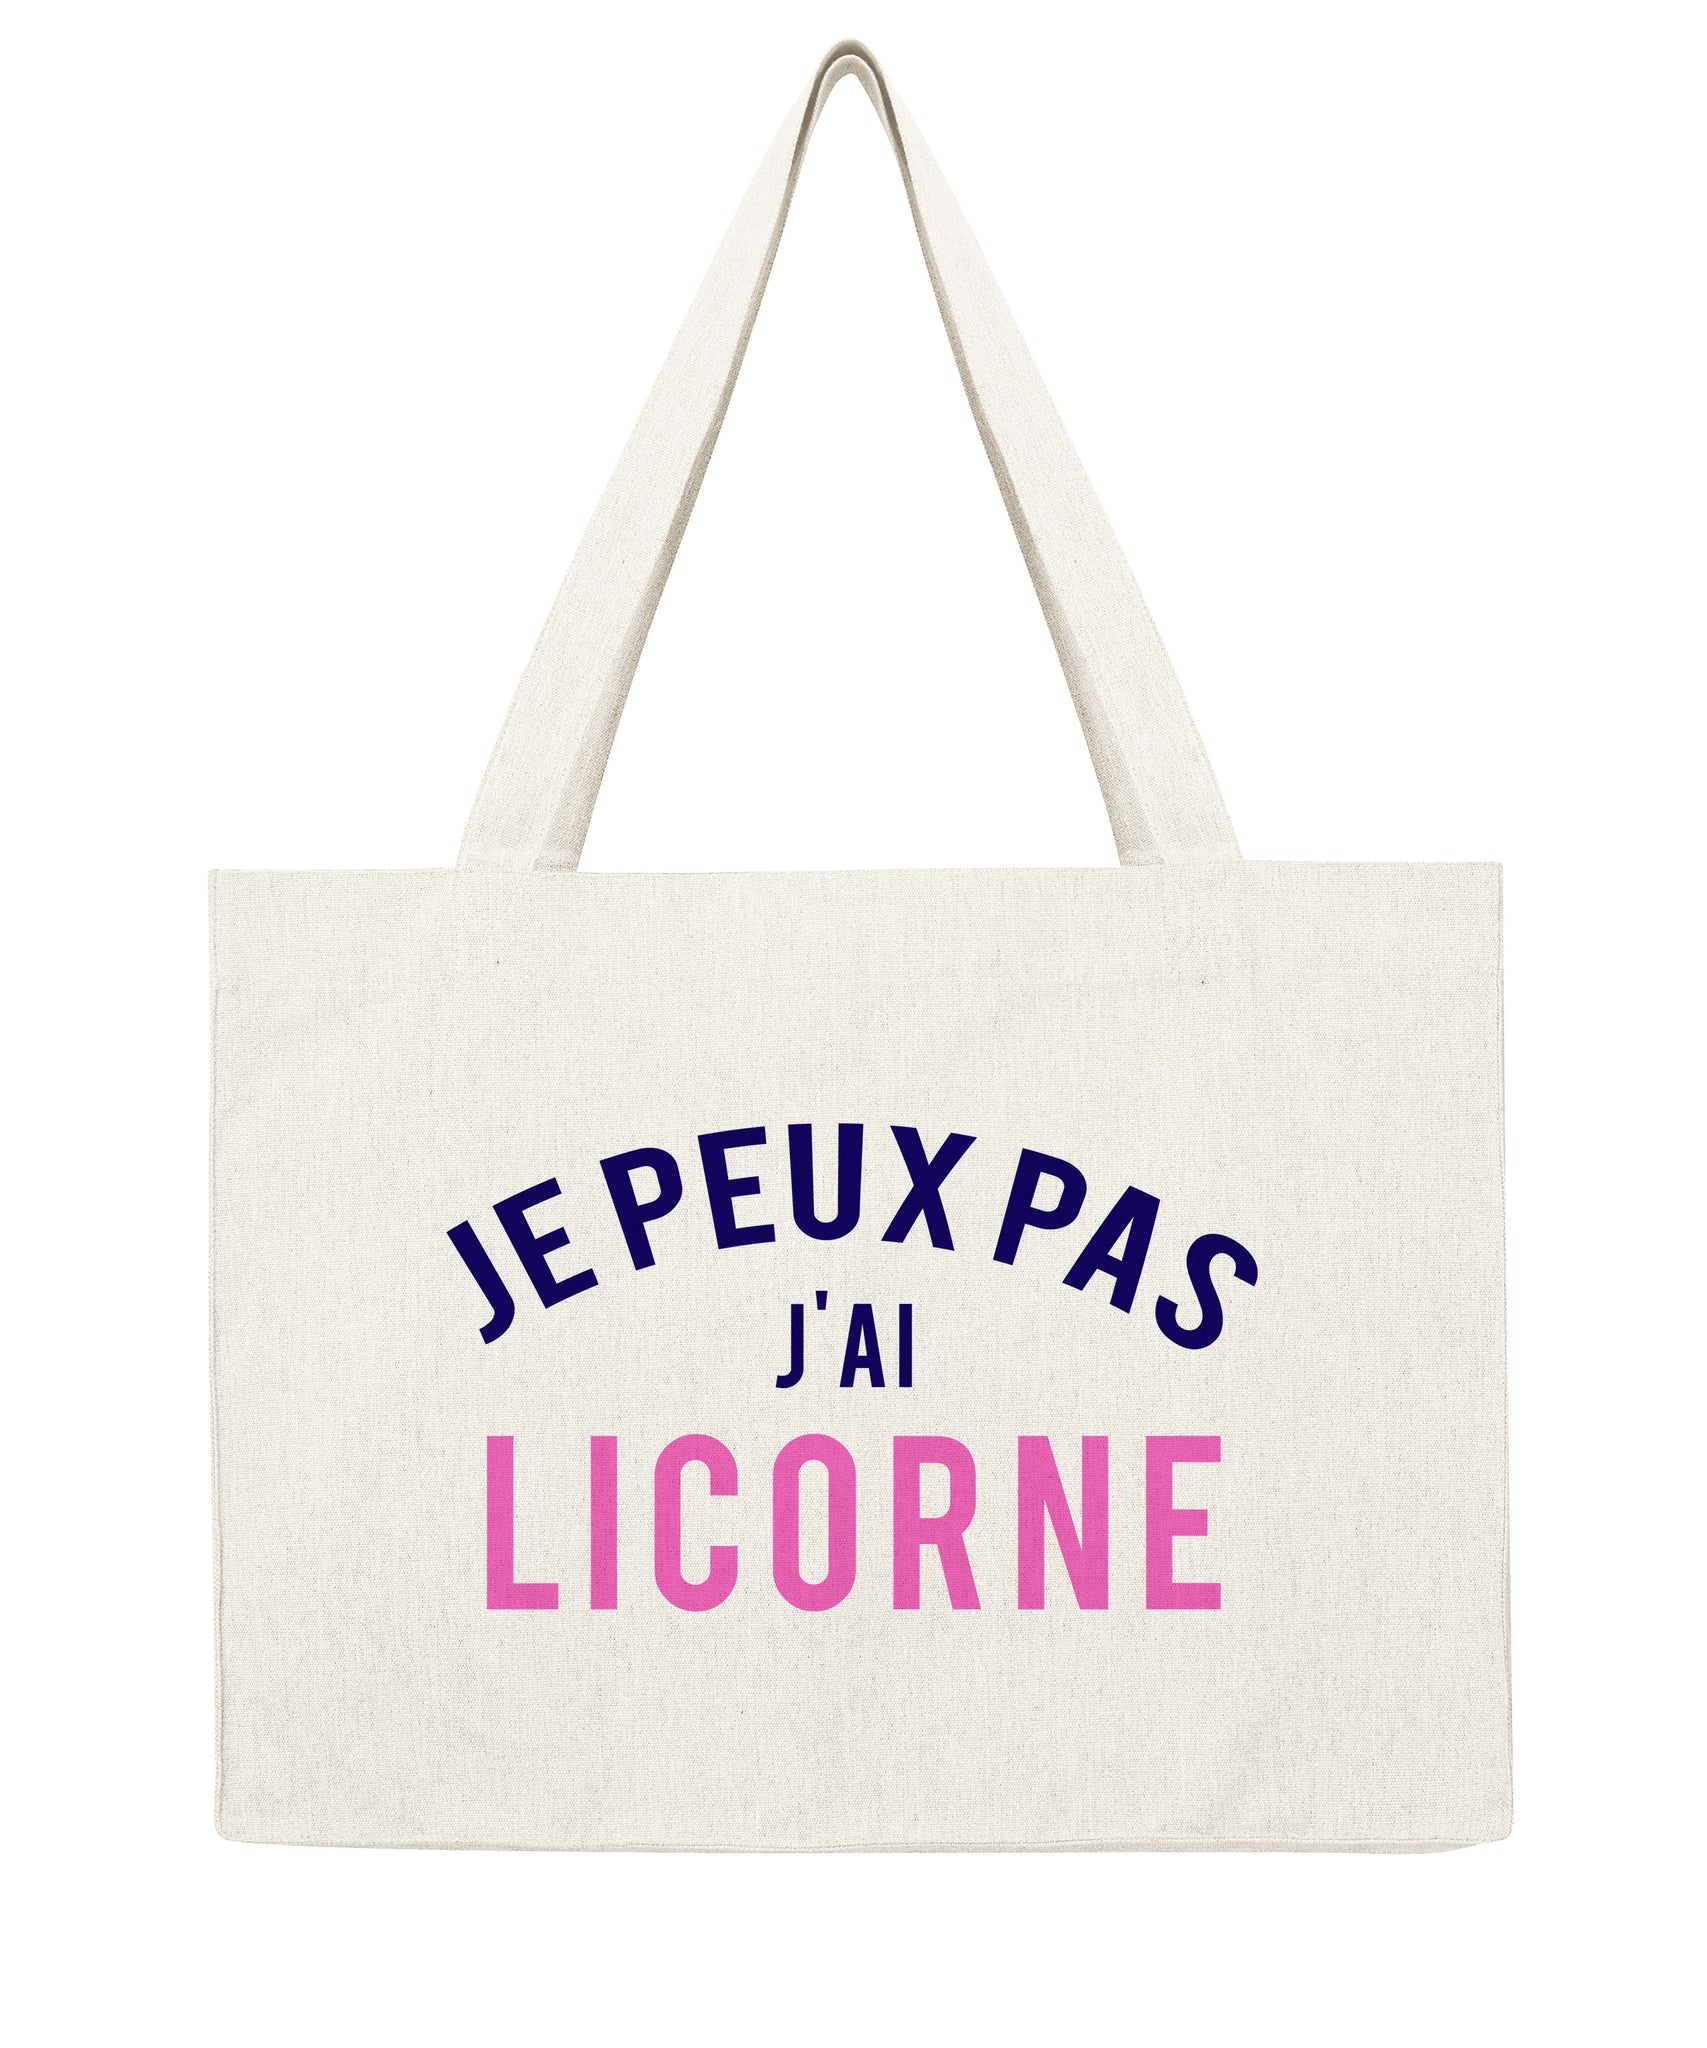 Je peux pas j'ai licorne - Shopping bag-Sacs-Atelier Amelot